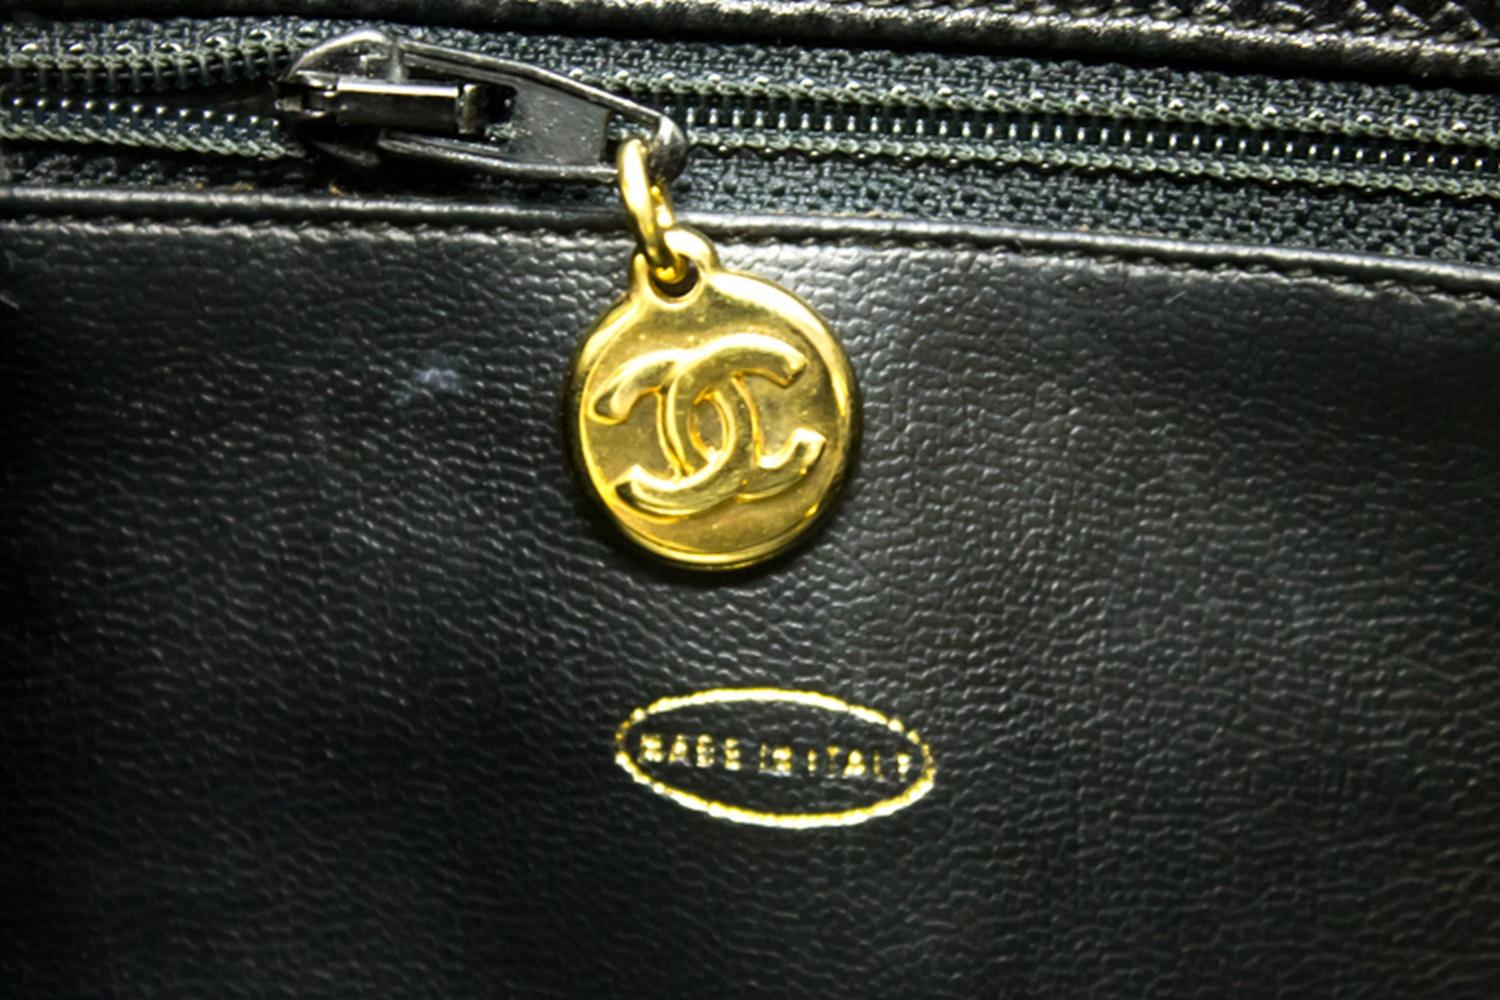 CHANEL Caviar Chain Shoulder Bag Black Leather Gold Hw CC Pocket 14